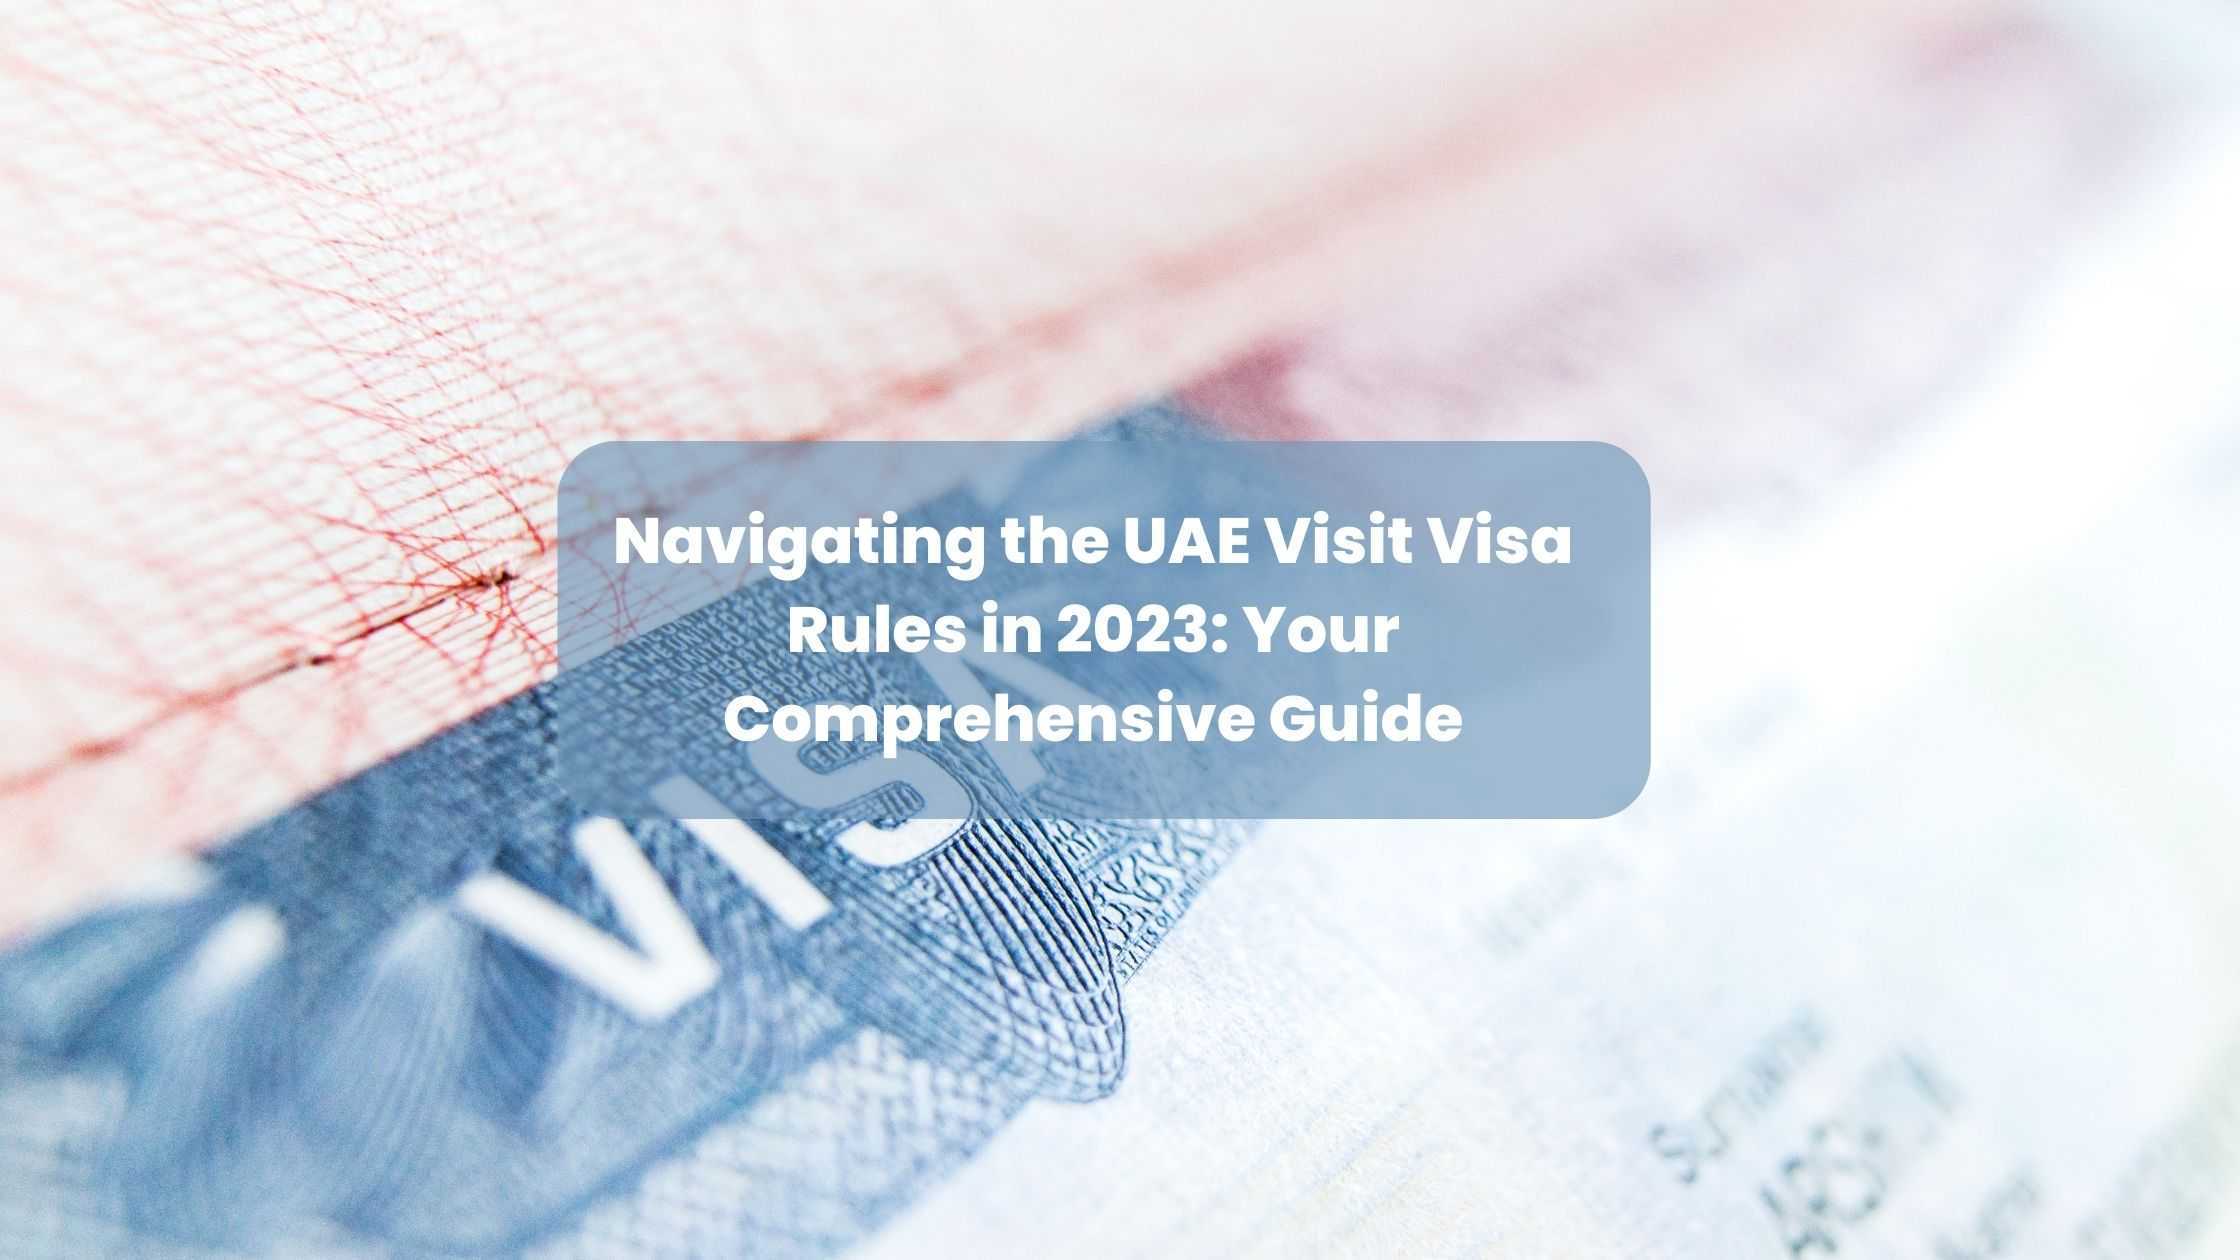 visit visa rules in uae